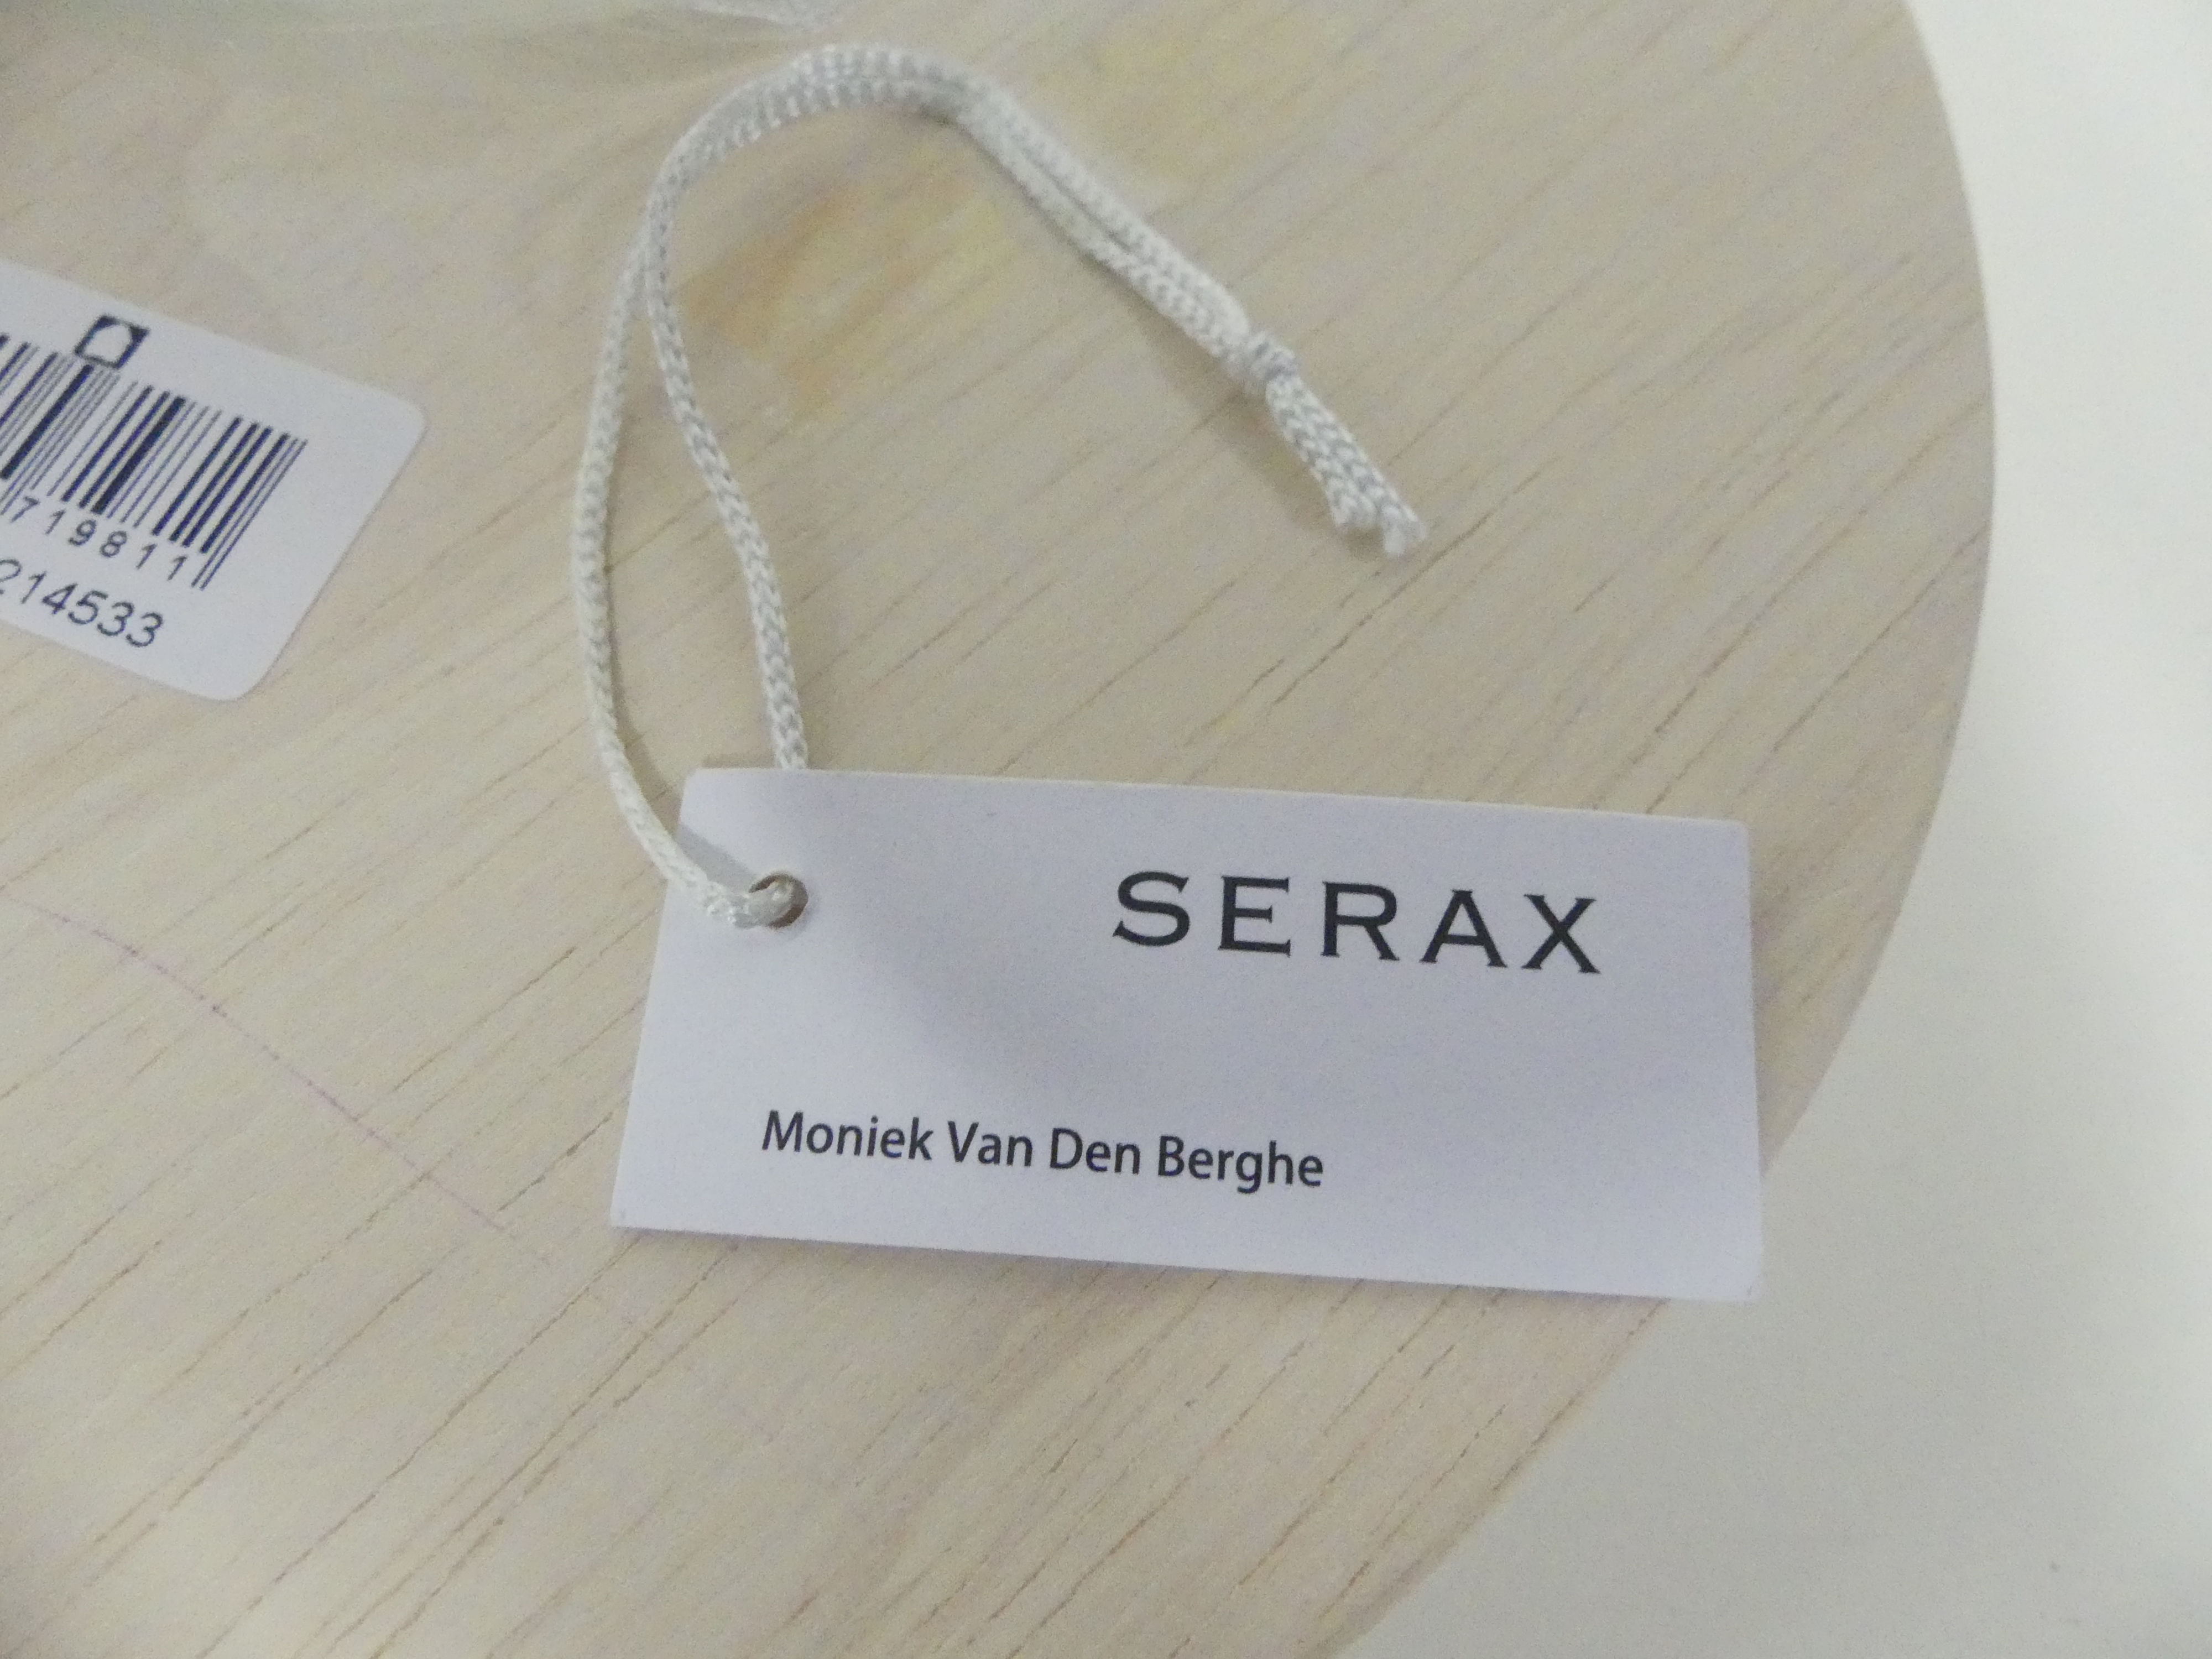 Serax bloempotje, design van Moniek van den Berghe  